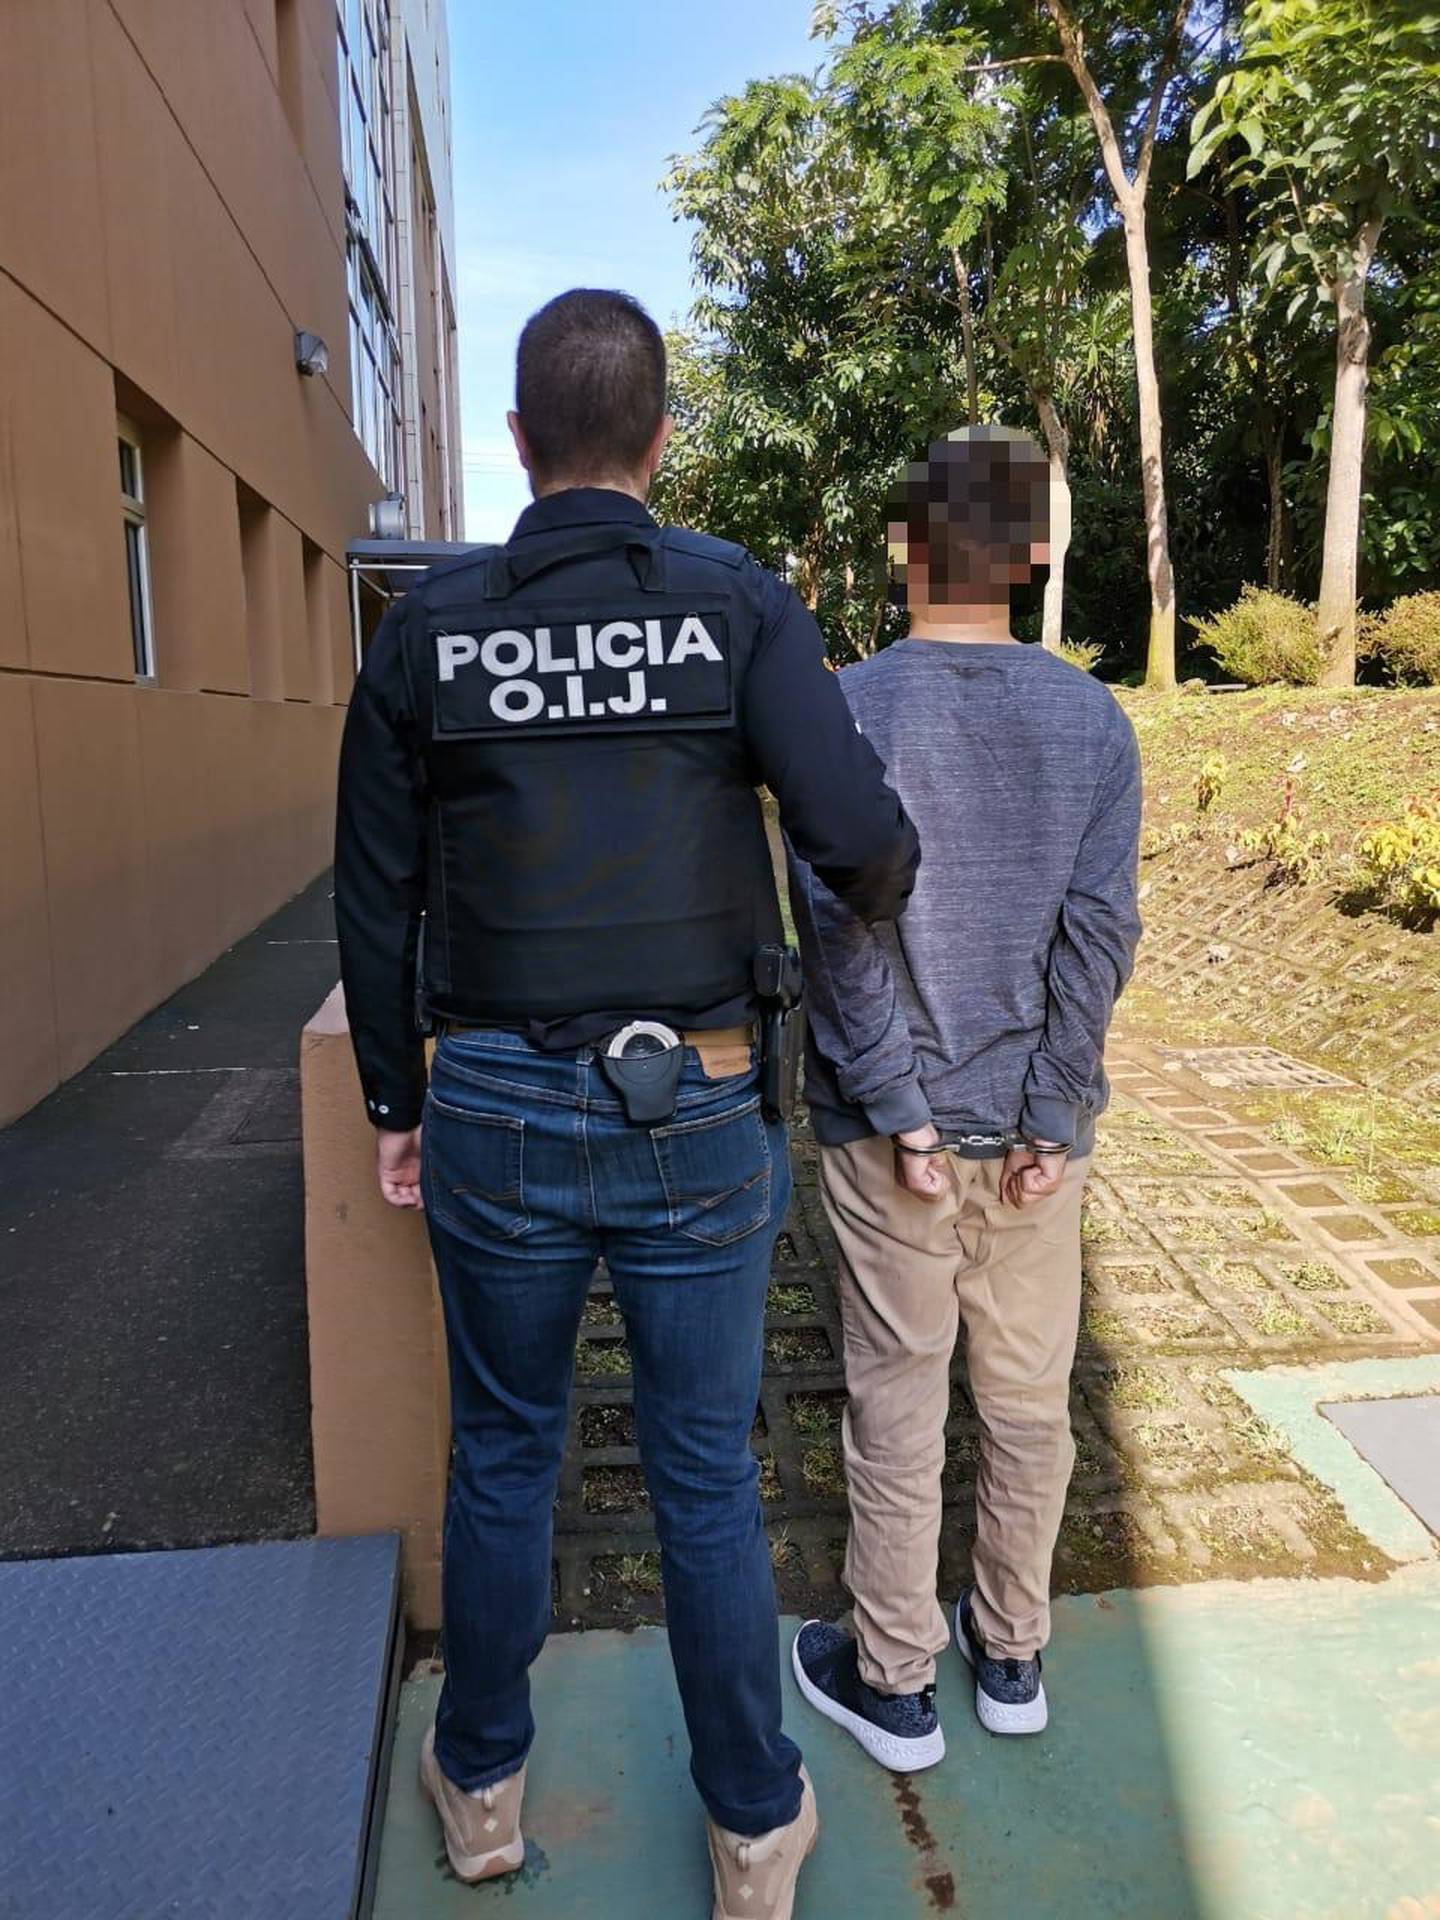 Joven de apellido Hidalgo, de 18 años, es detenido como sospechoso de engañar a menor de 16 años para obtener fotos íntimas. Foto OIJ.